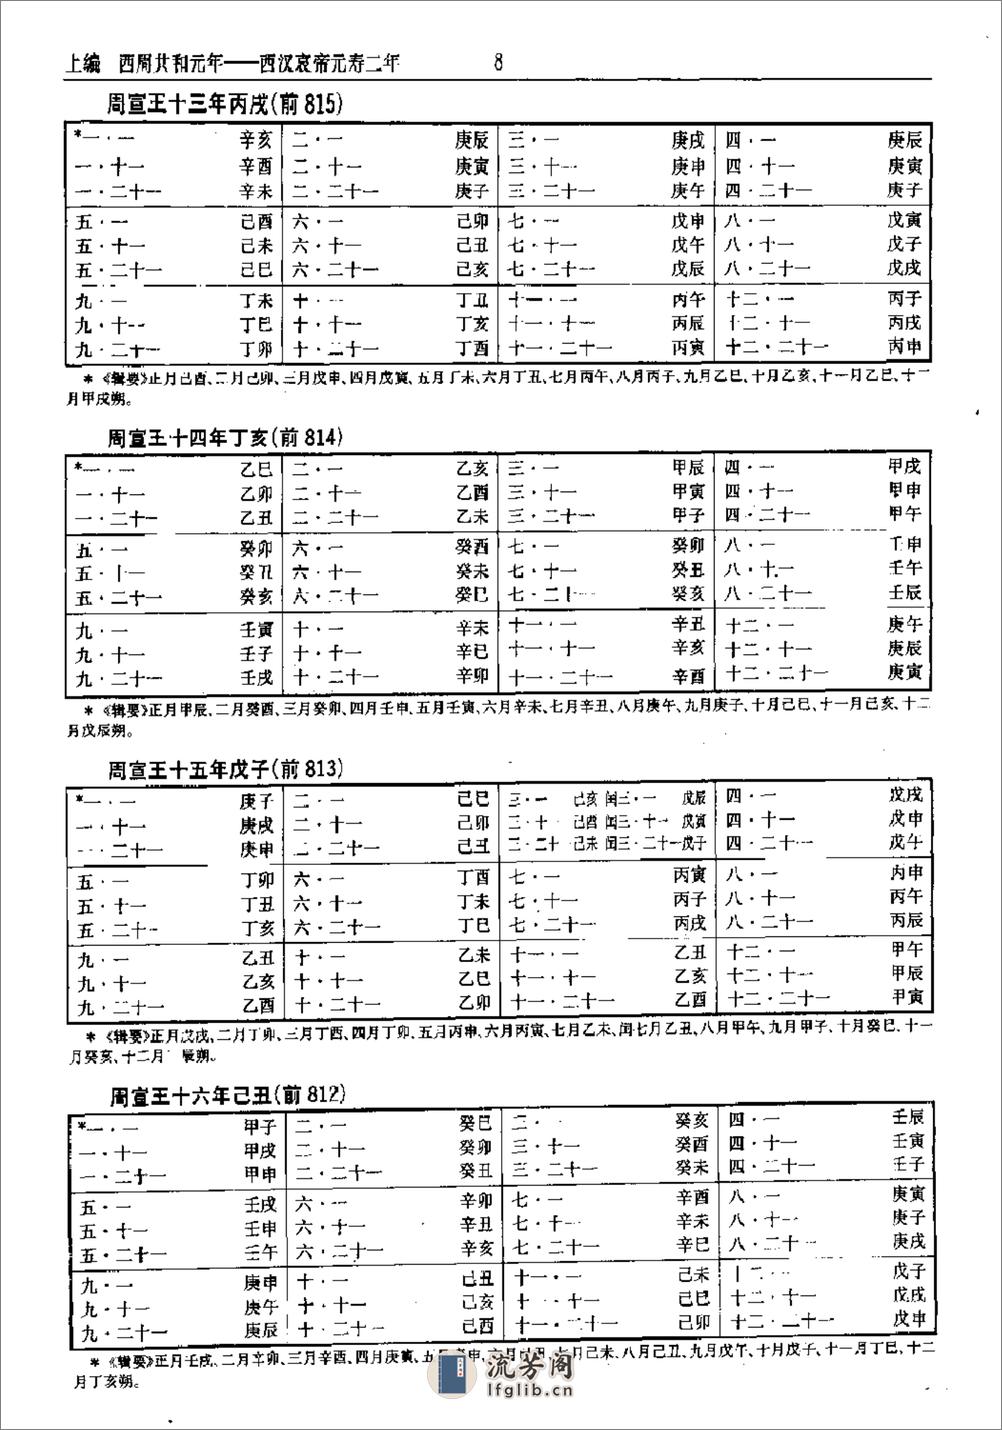 中国史历日和中西历日对照表·方诗铭·上海辞书1 - 第13页预览图